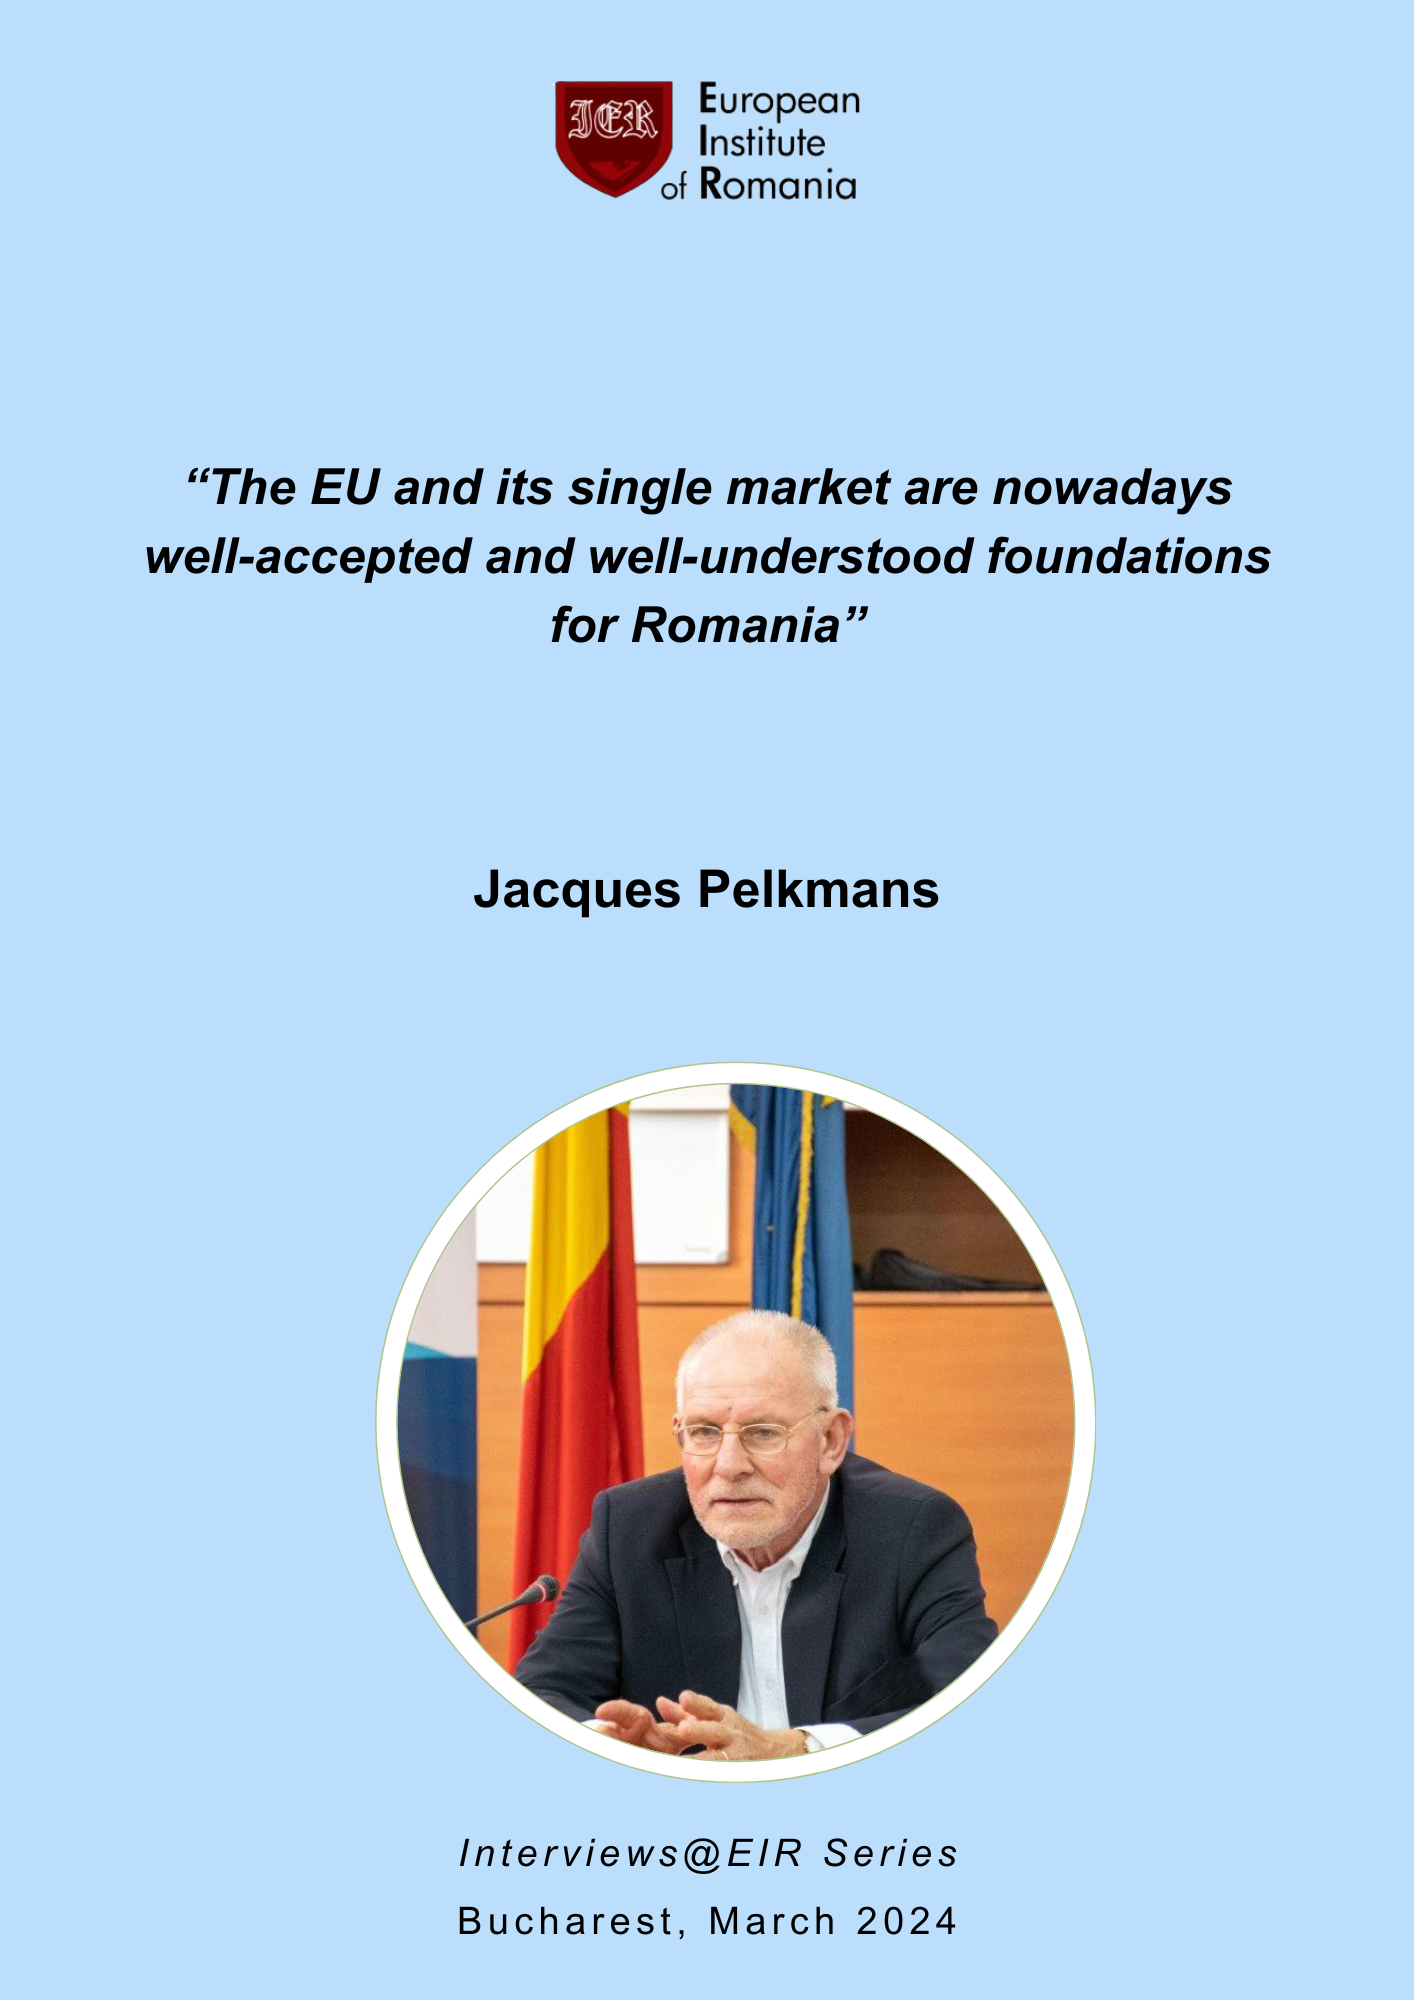 Interviu cu dl Jacques Pelkmans – Uniunea Europeană și piața sa unică sunt văzute ca fundamente clar acceptate și înțelese de către România